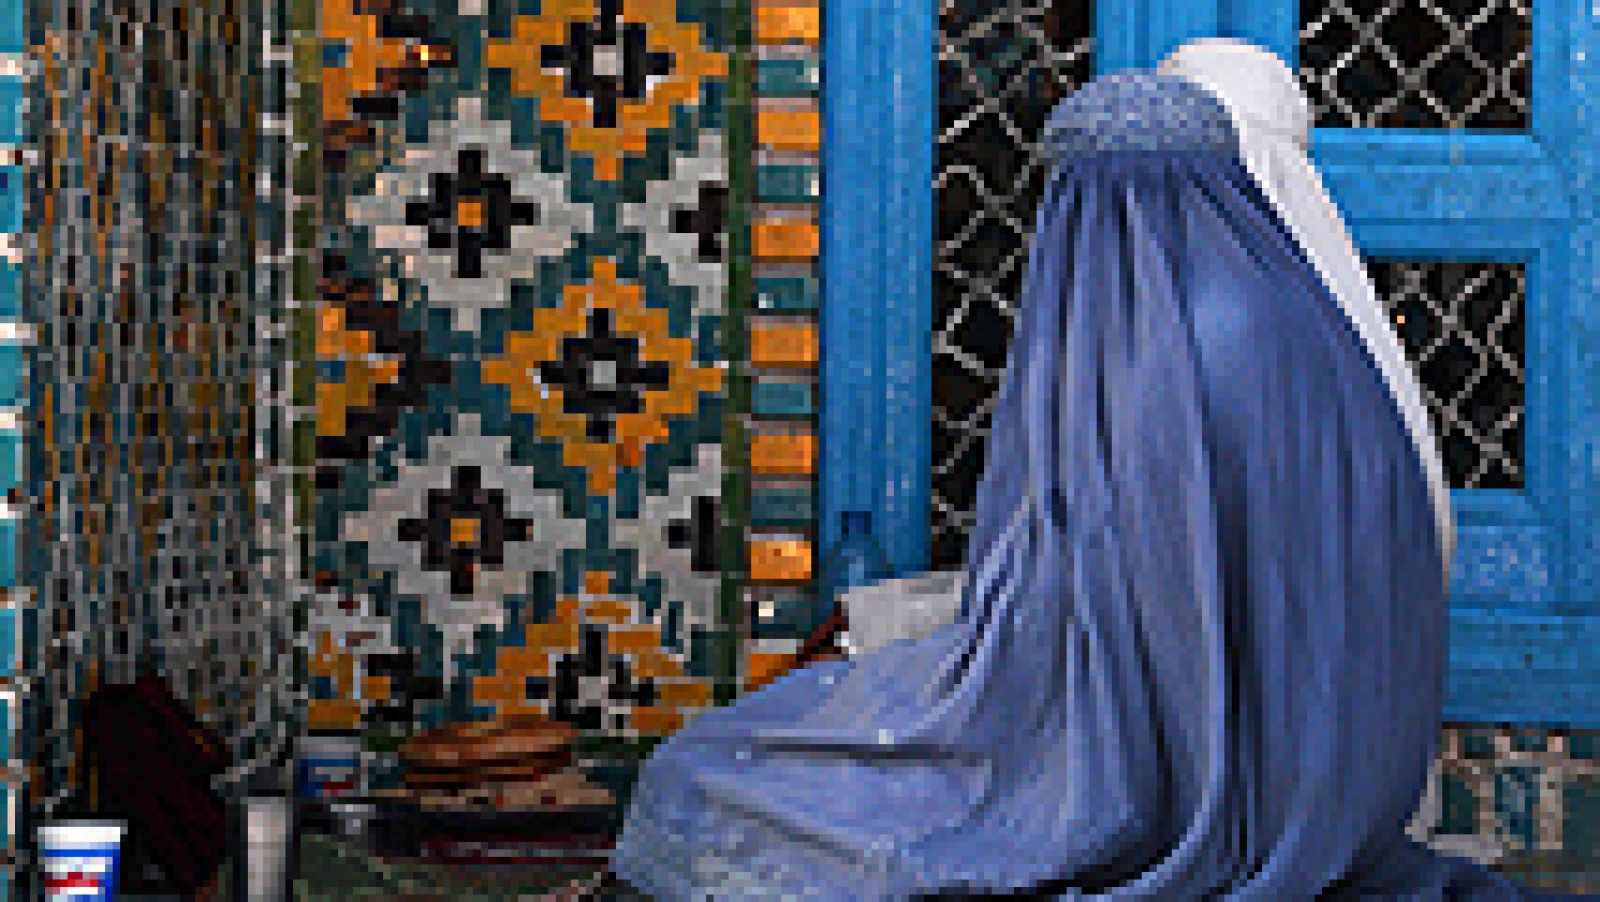   El Tribunal Europeo de Derechos Humanos ha fallado este martes que la ley francesa de 2011 que prohíbe llevar el burka o velo integral islámico en espacios públicos es acorde al Convenio Europeo de Derechos Humanos. La decisión es definitiva.  